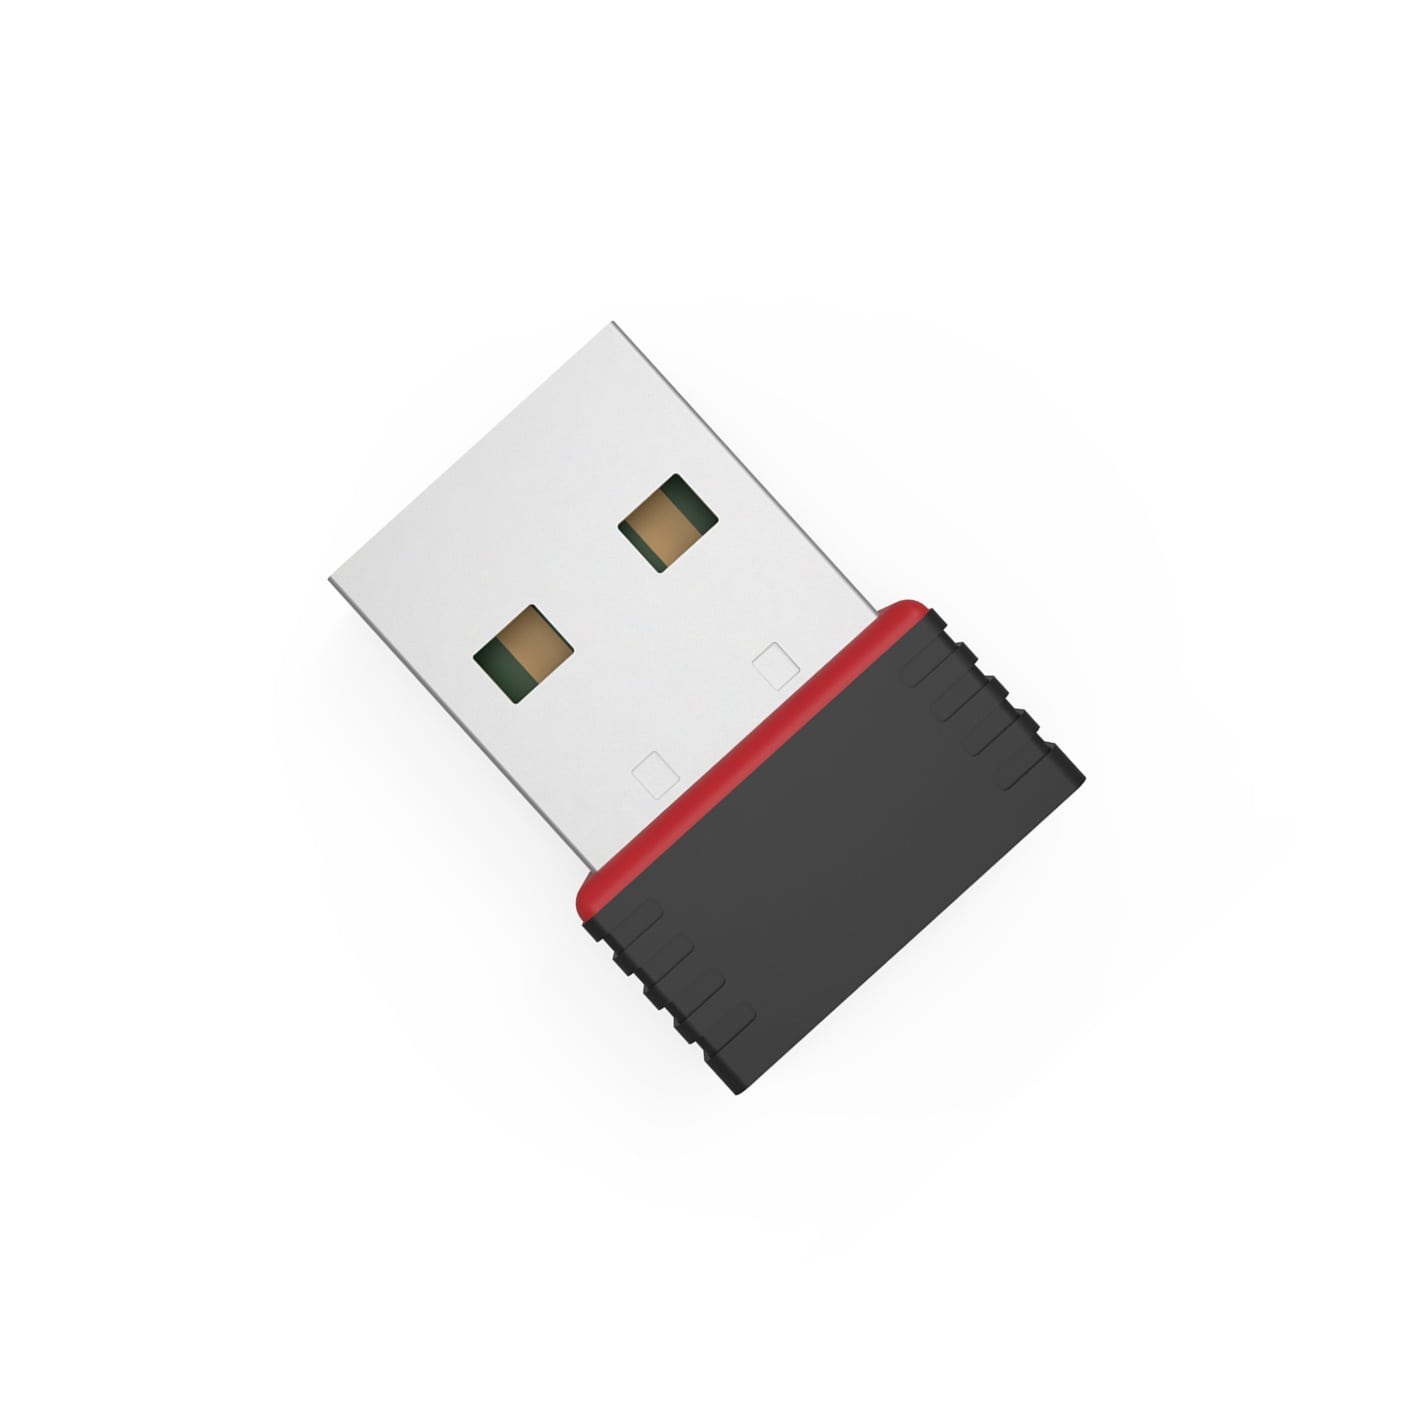 Беспроводной USB Wi-Fi адаптер RTL8188